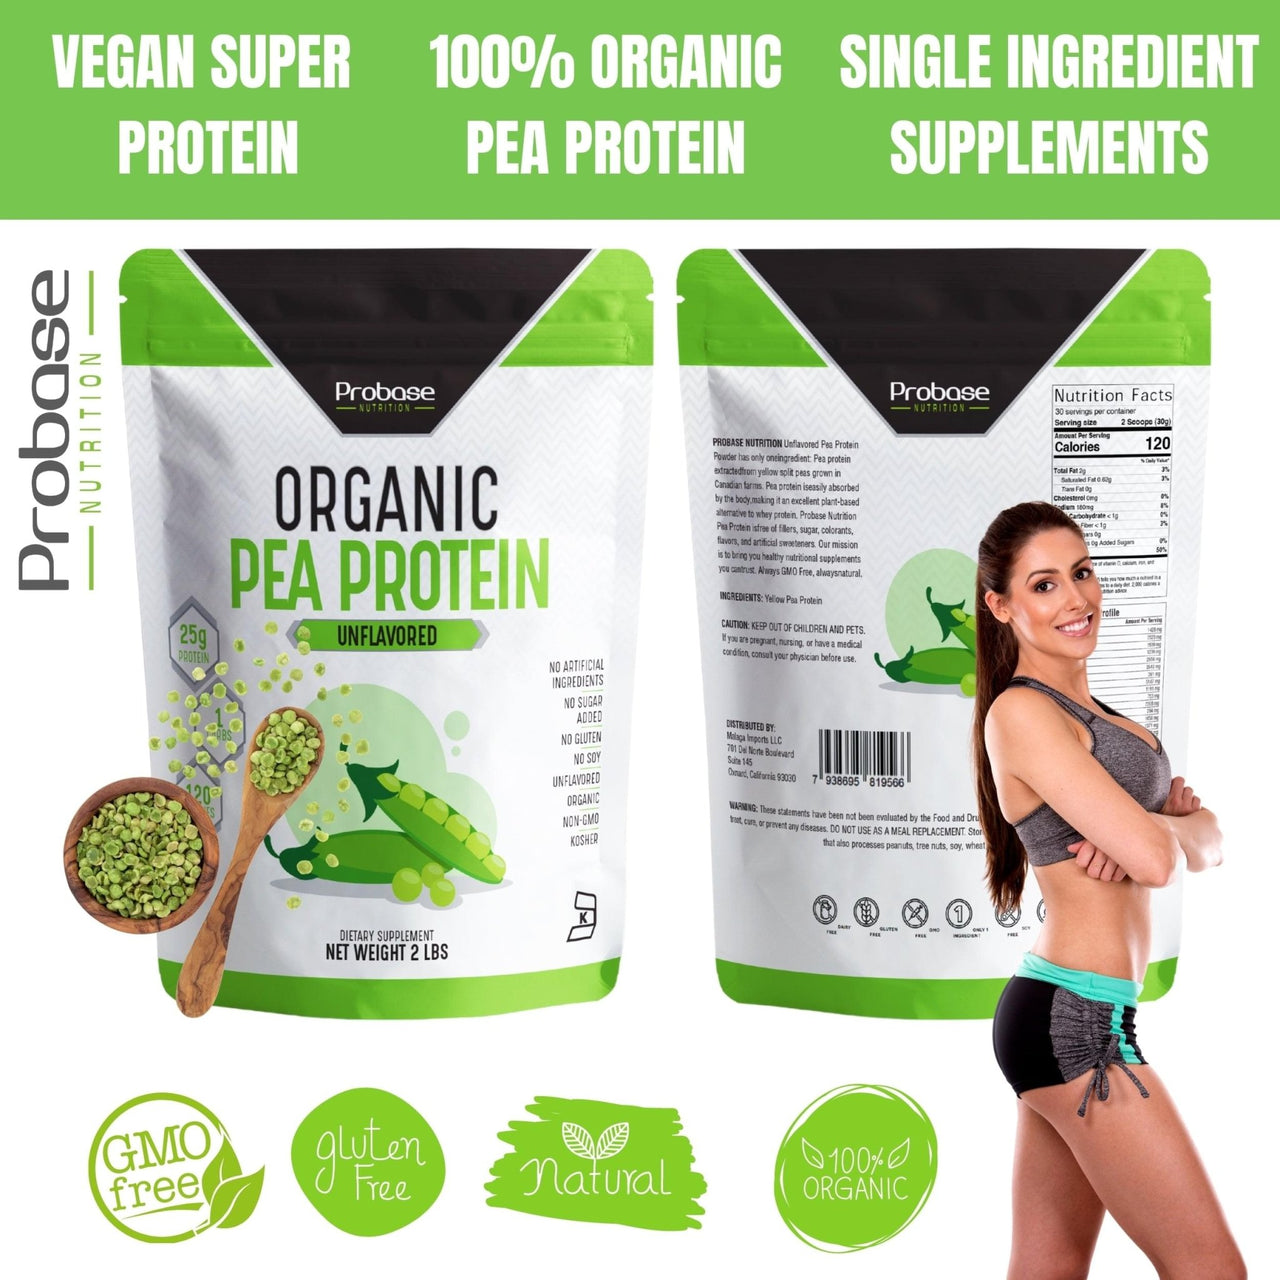 Probase Organic Pea Protein (2 pounds) - Probase Nutrition